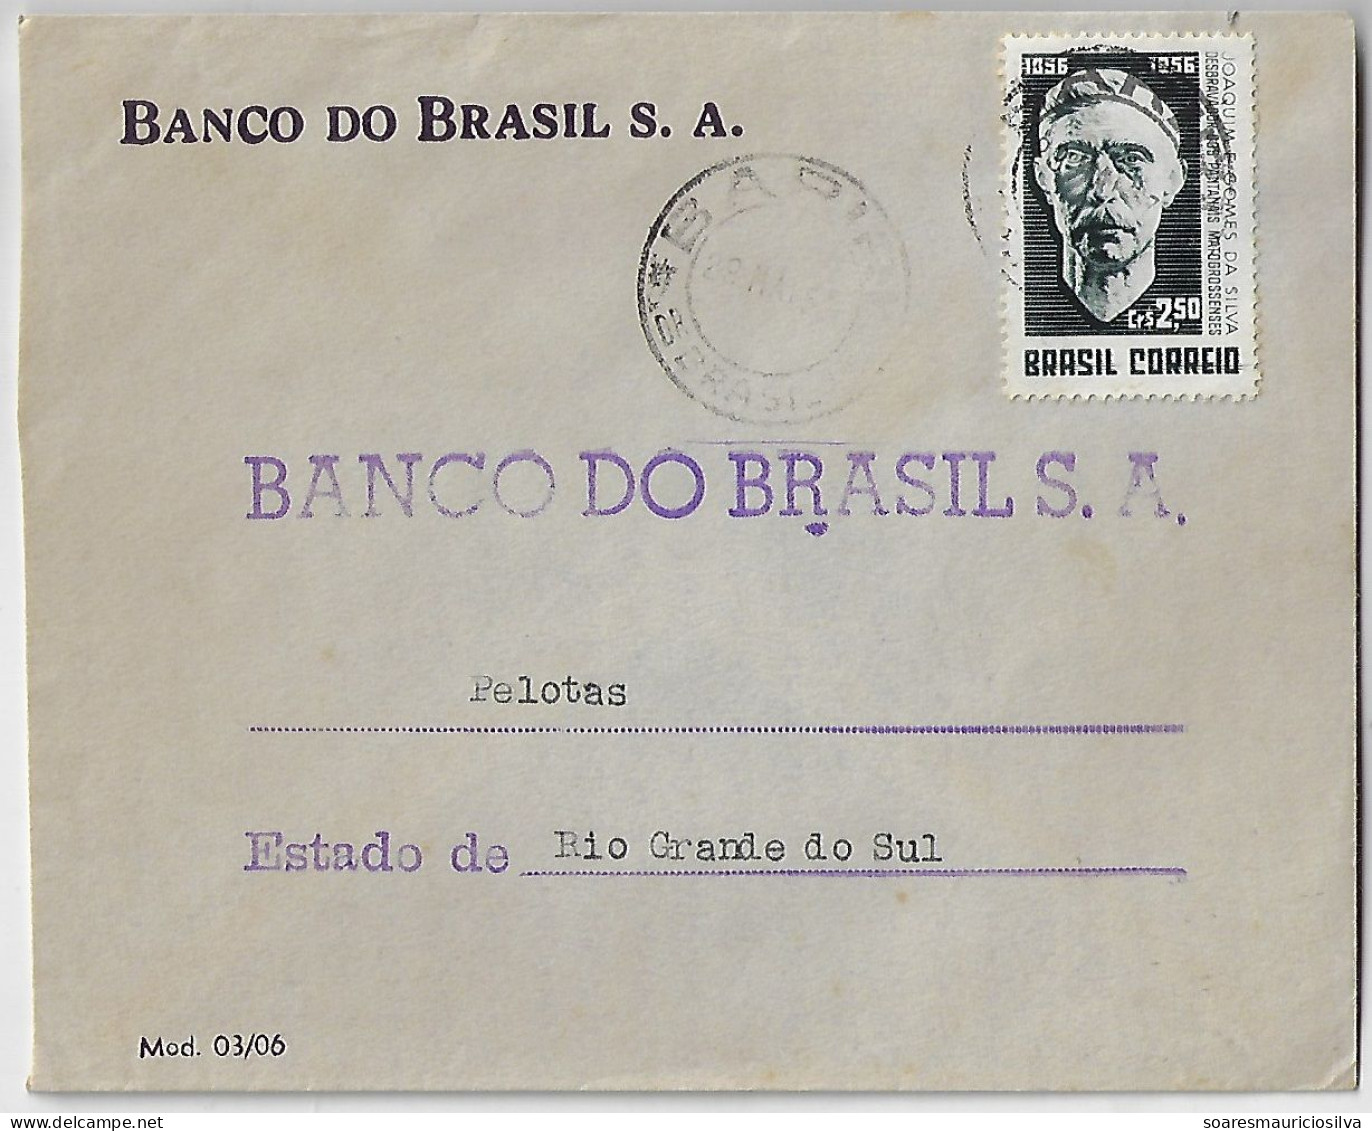 1956 Bank Of Brazil Cover Sent From São Paulo Agency Bariri To Pelotas Stamp Joaquim Eugênio Gomes Da Silva - Cartas & Documentos